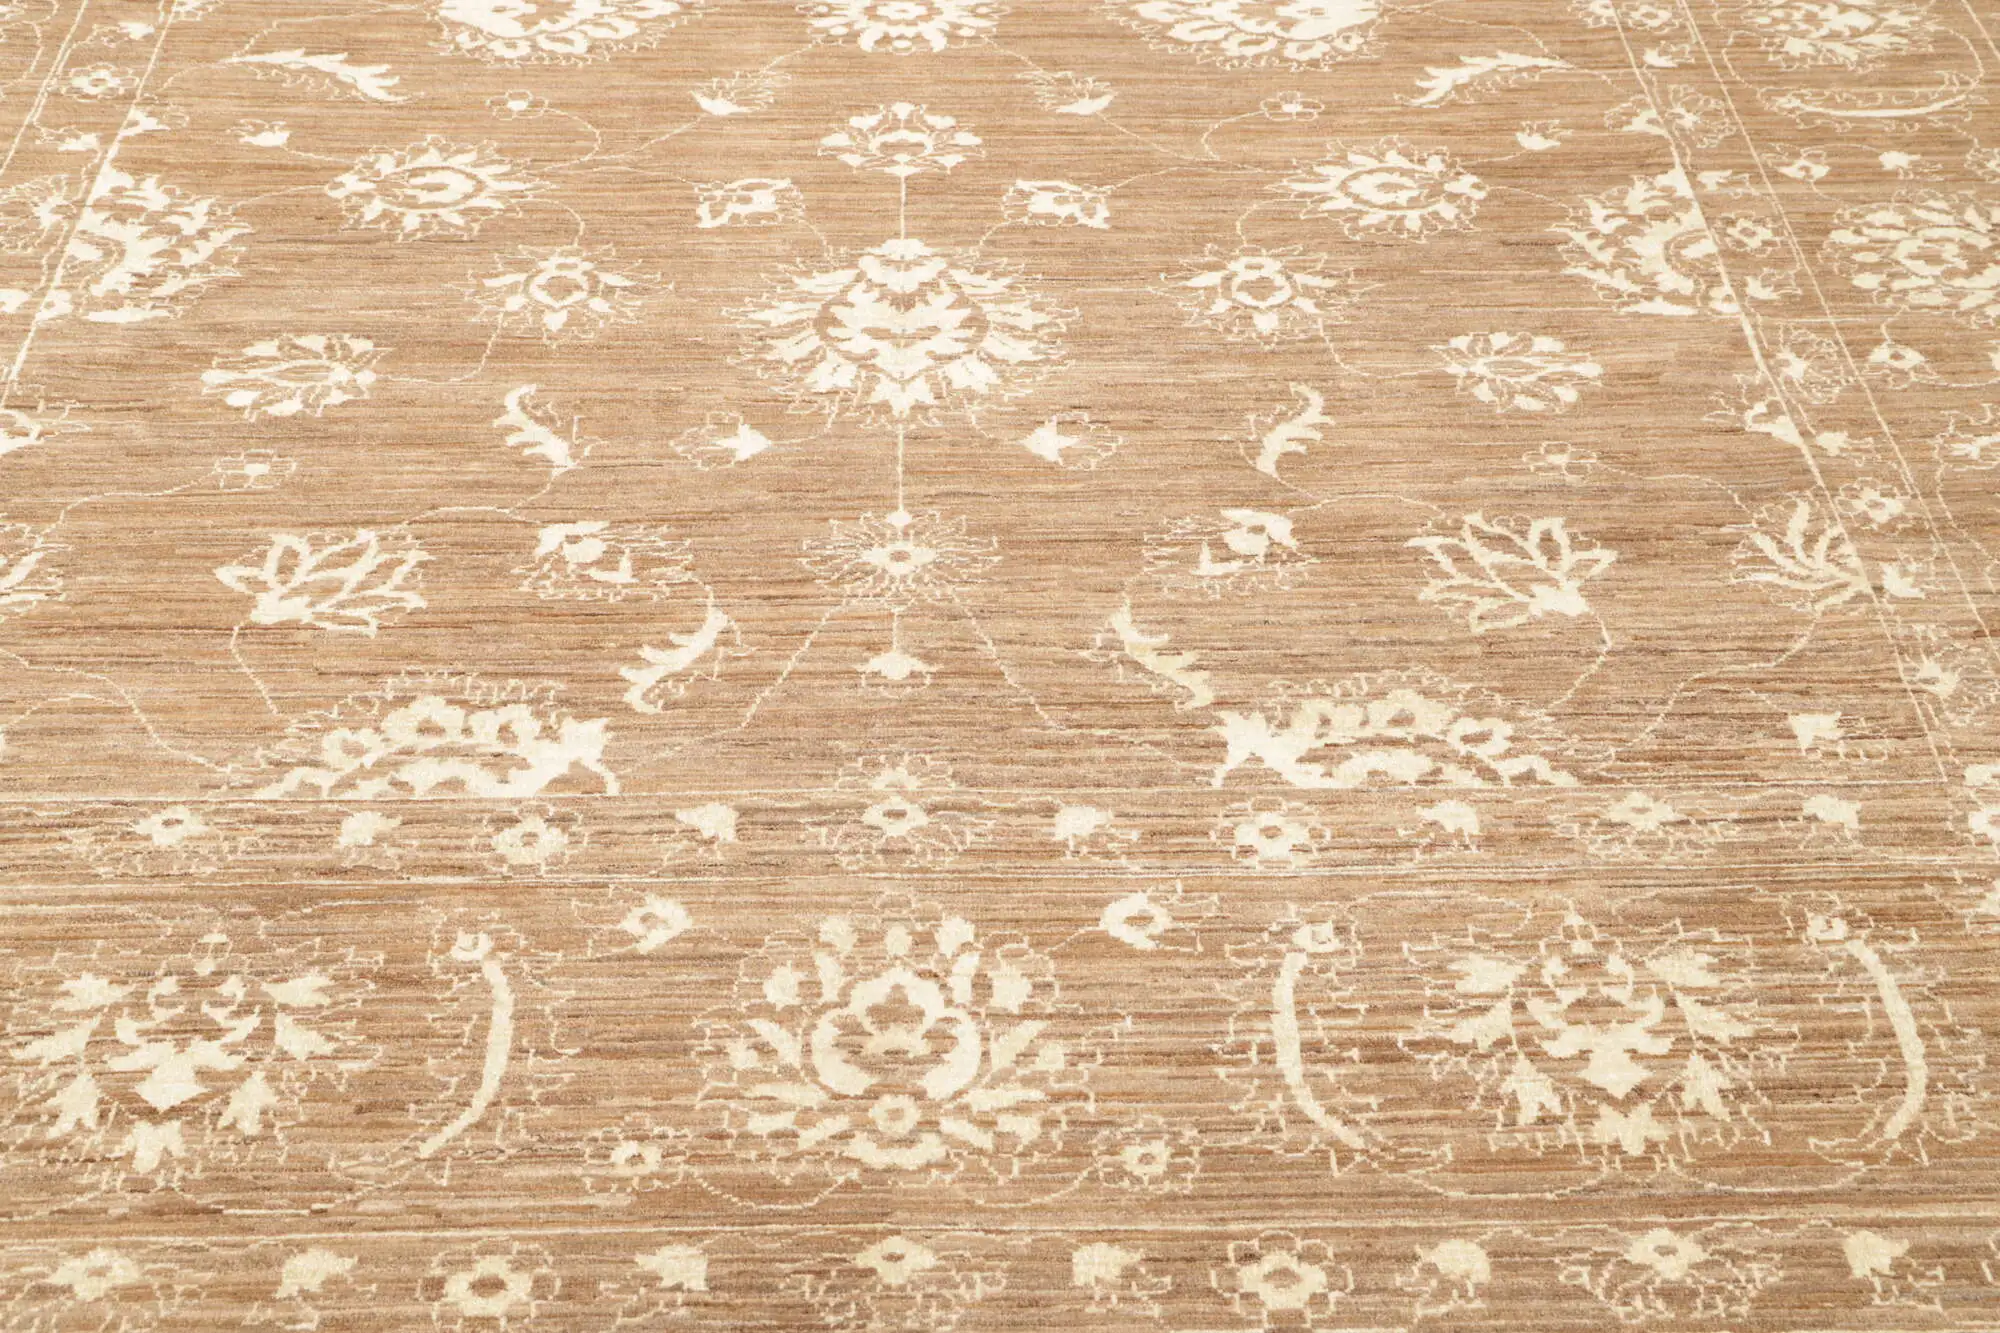 Teppich Ziegler 248 x 339 cm Orientteppich beige braun Handgeknüpft Schurwolle